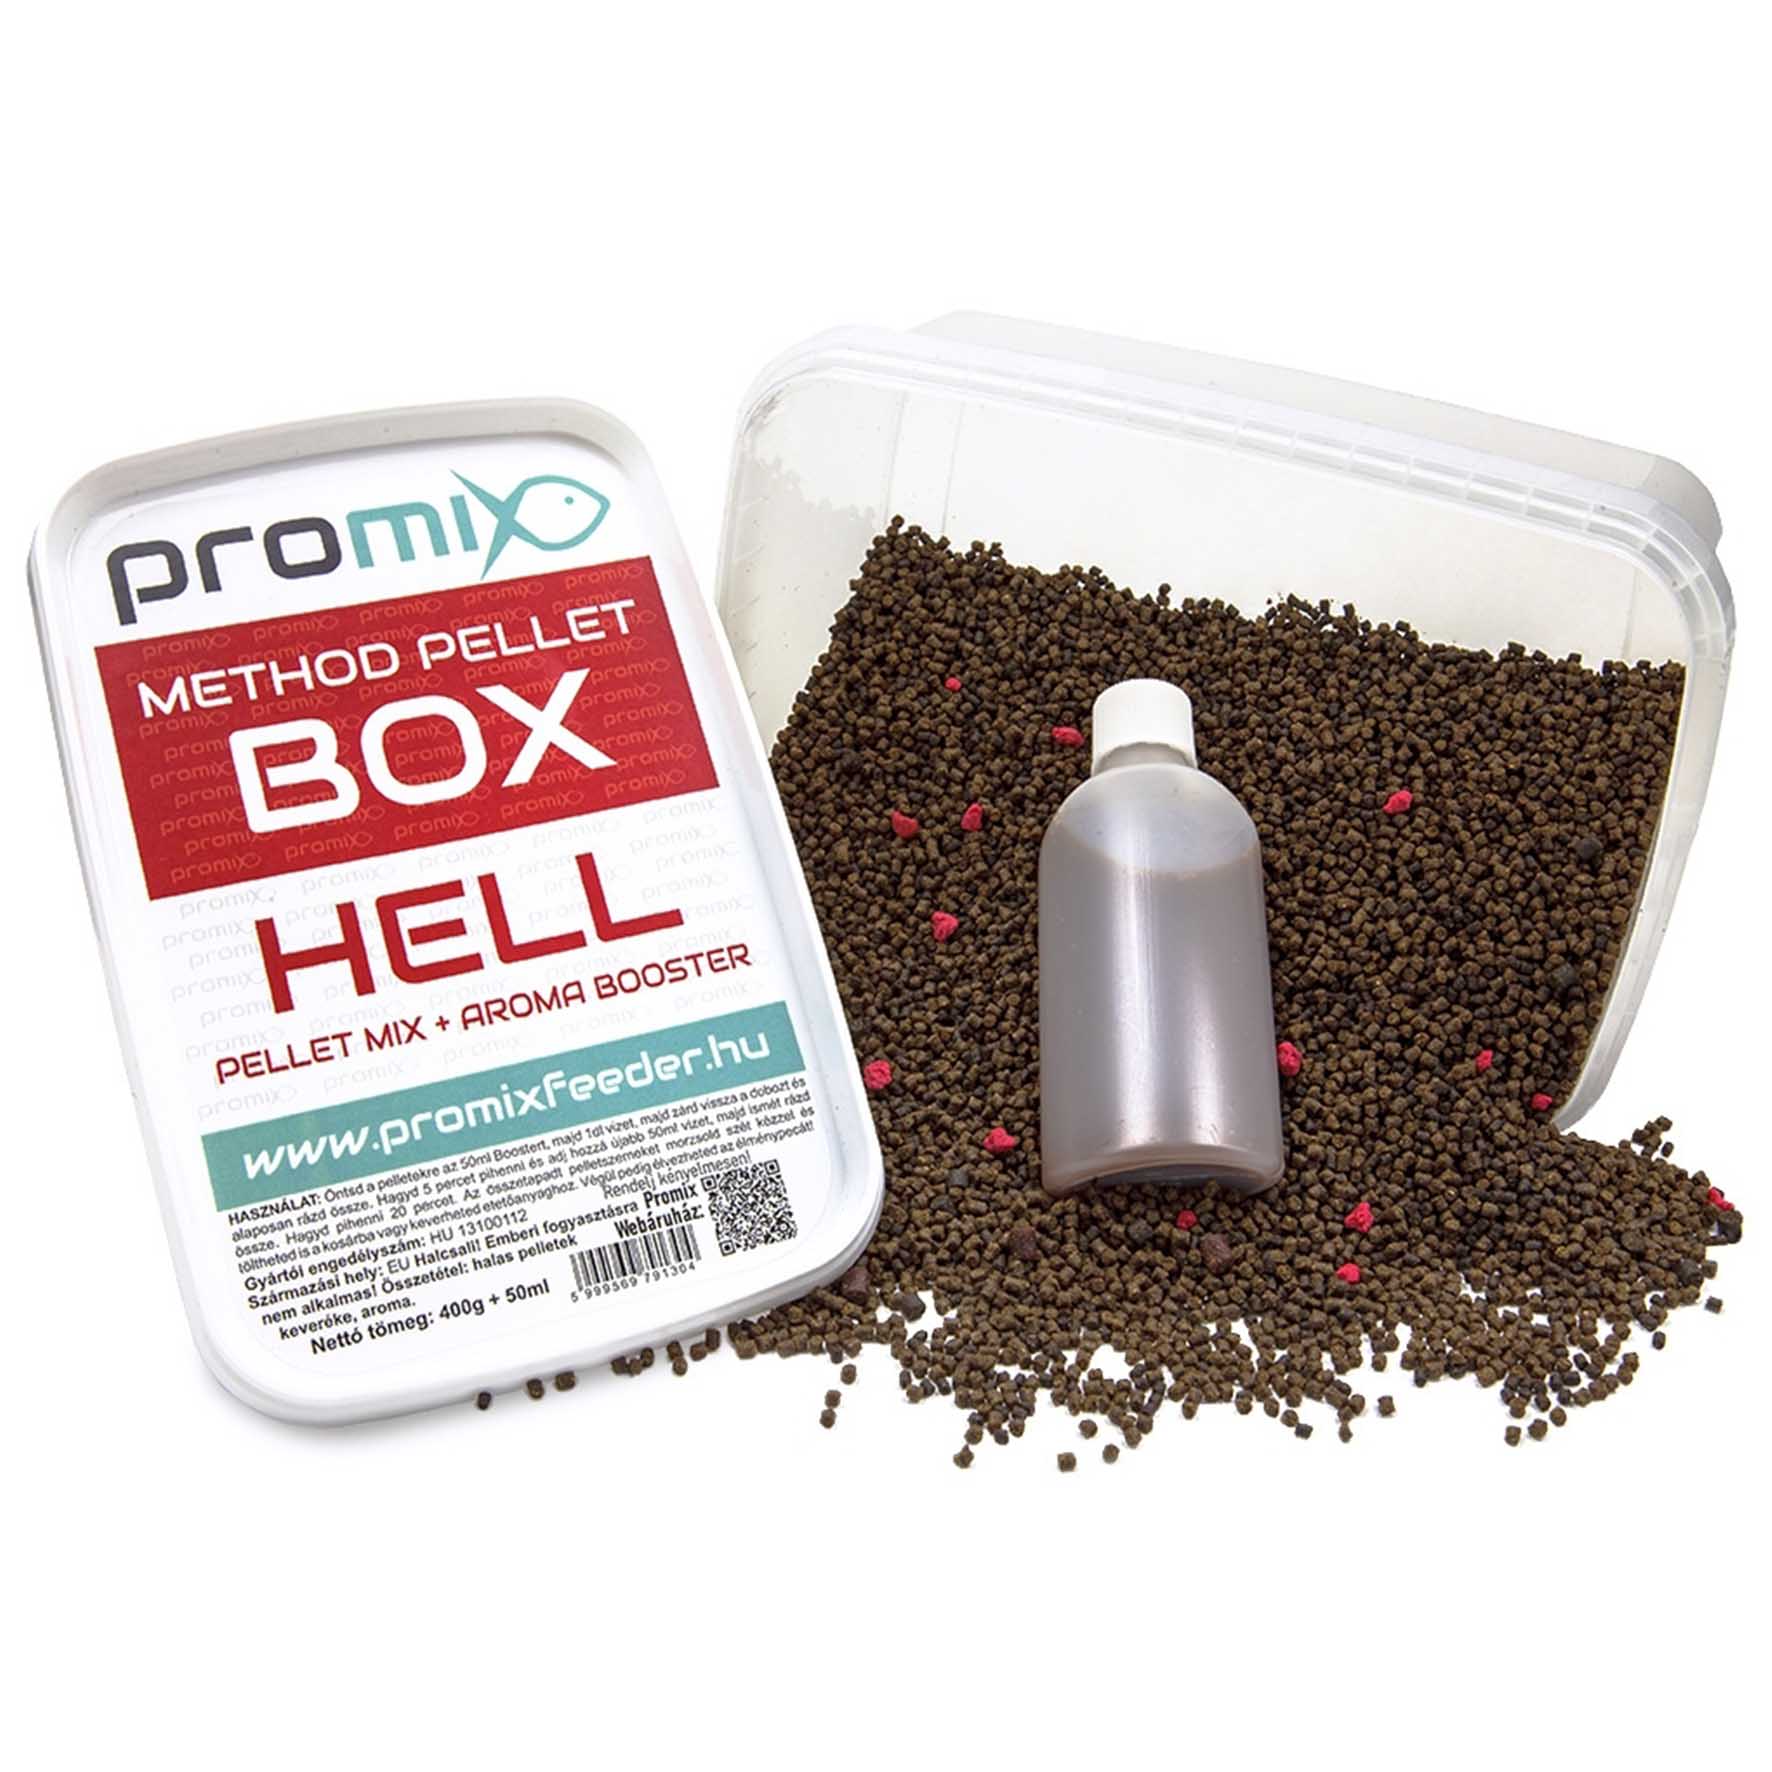 Promix Method Pellet Box HELL